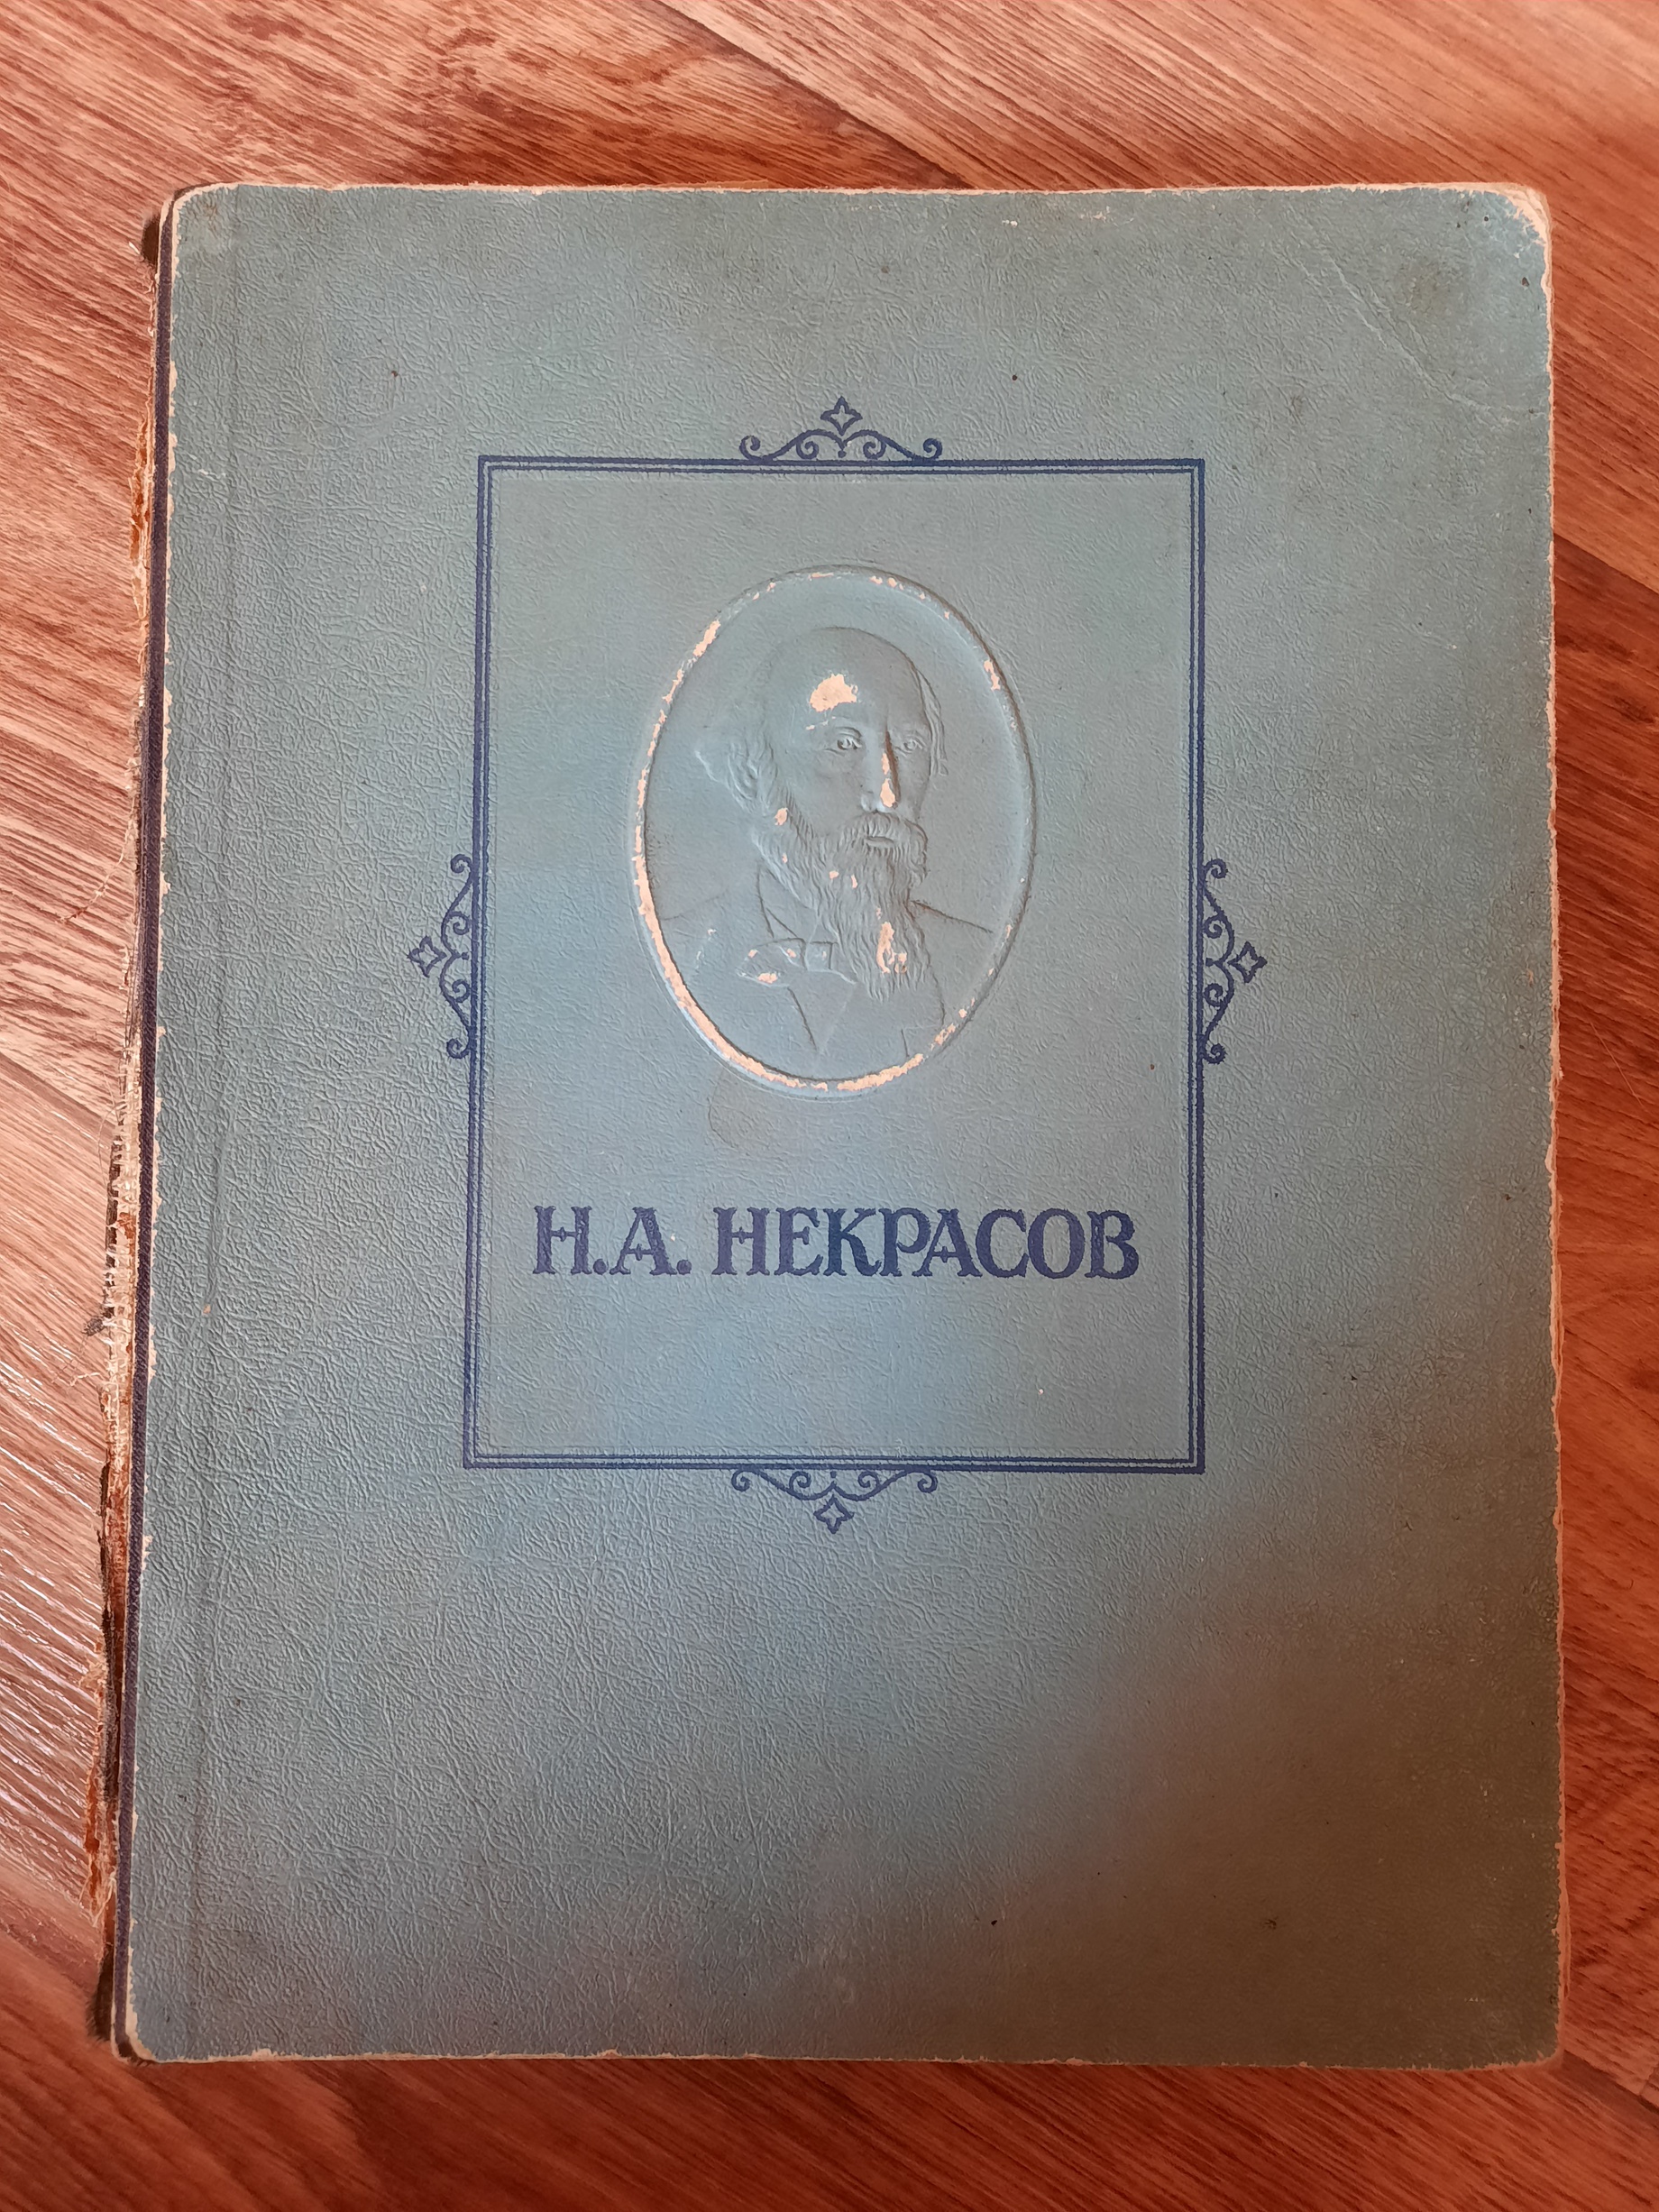 Книга Некрасов Избранные Сочинения 1947 год Издательство Художественной Литературы